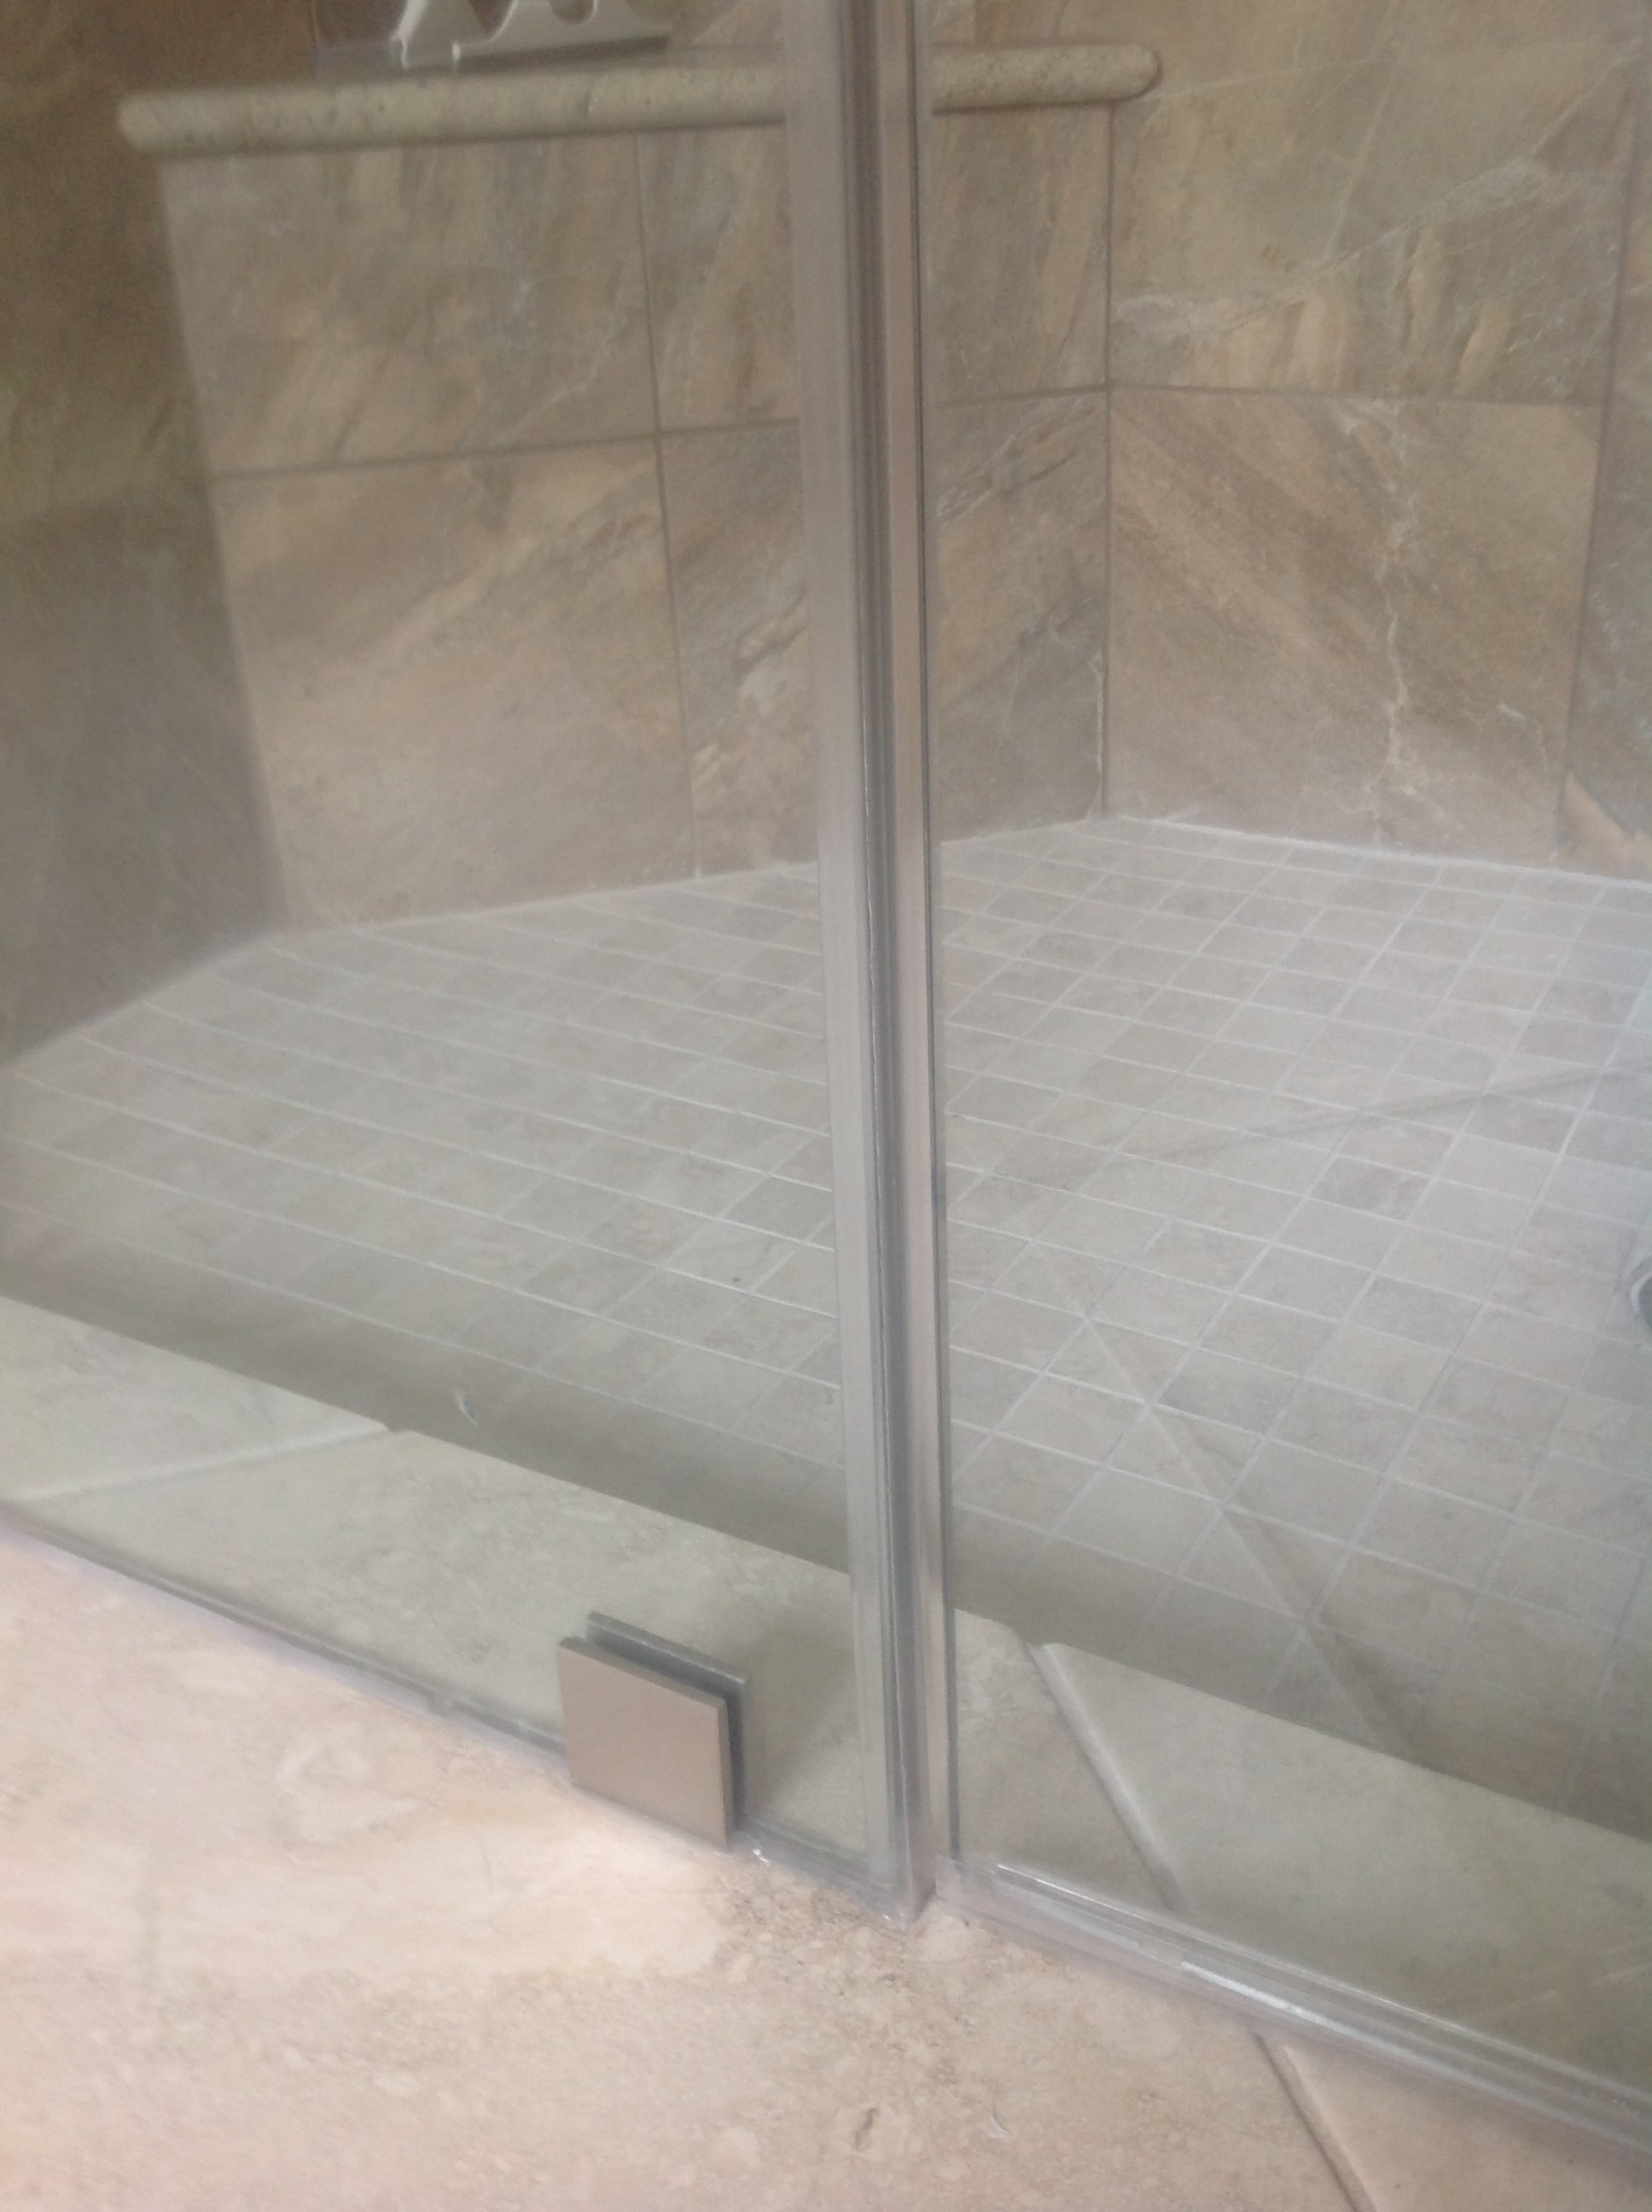 Sliding Glass Shower Door Sealsglass shower door seal easily fu6 belmont sife